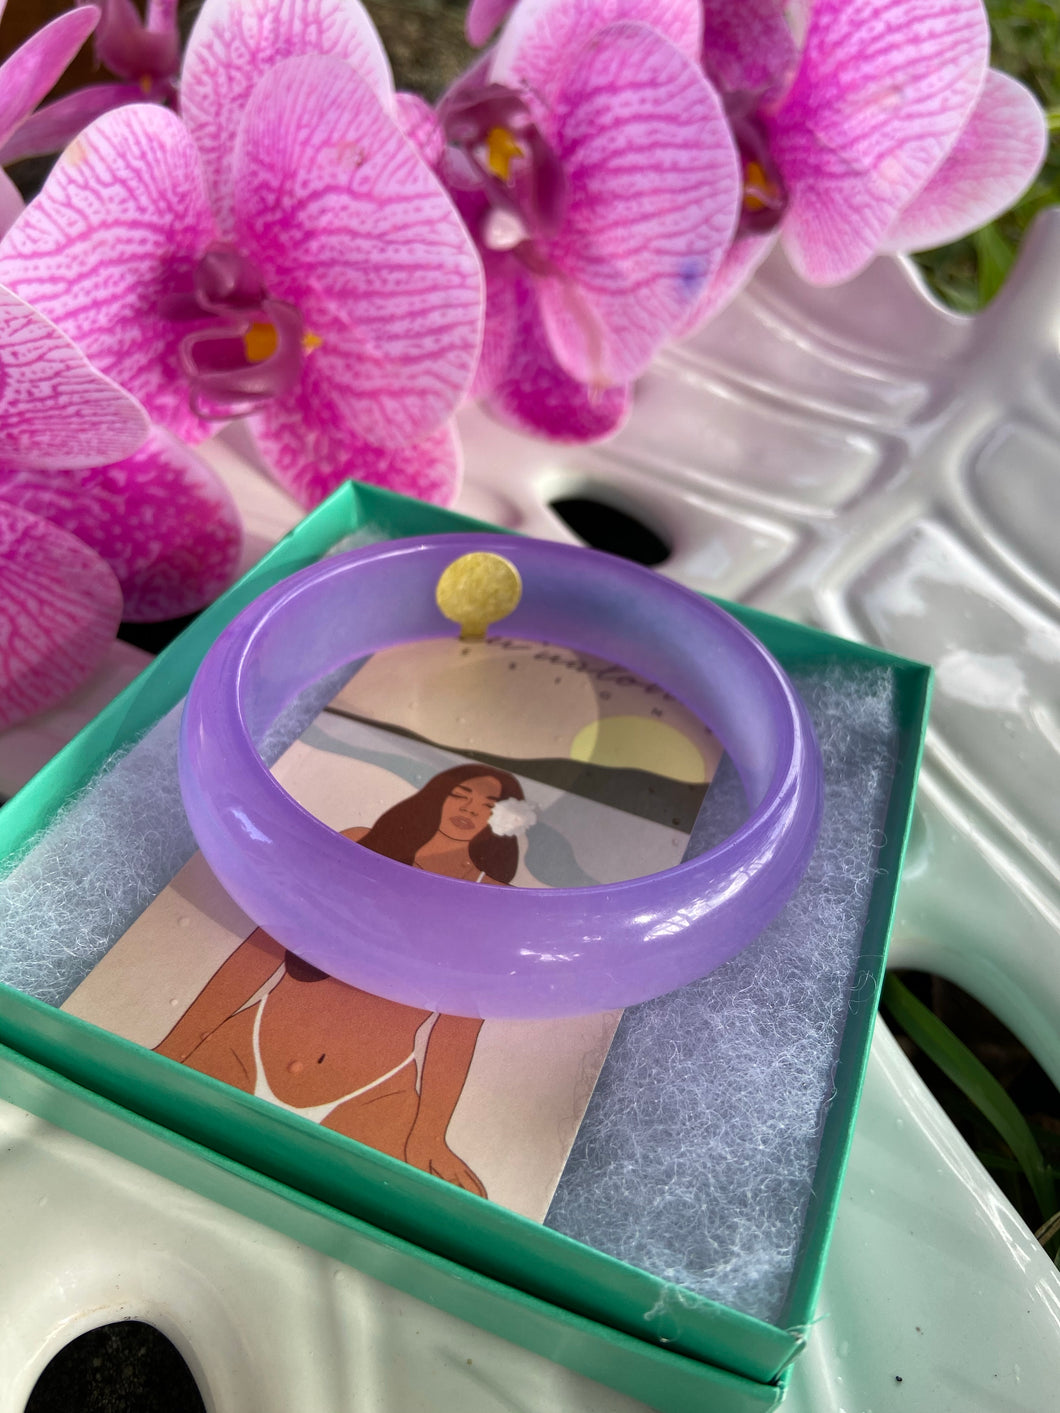 Lavender/Lilac Jade Bracelets 71/2